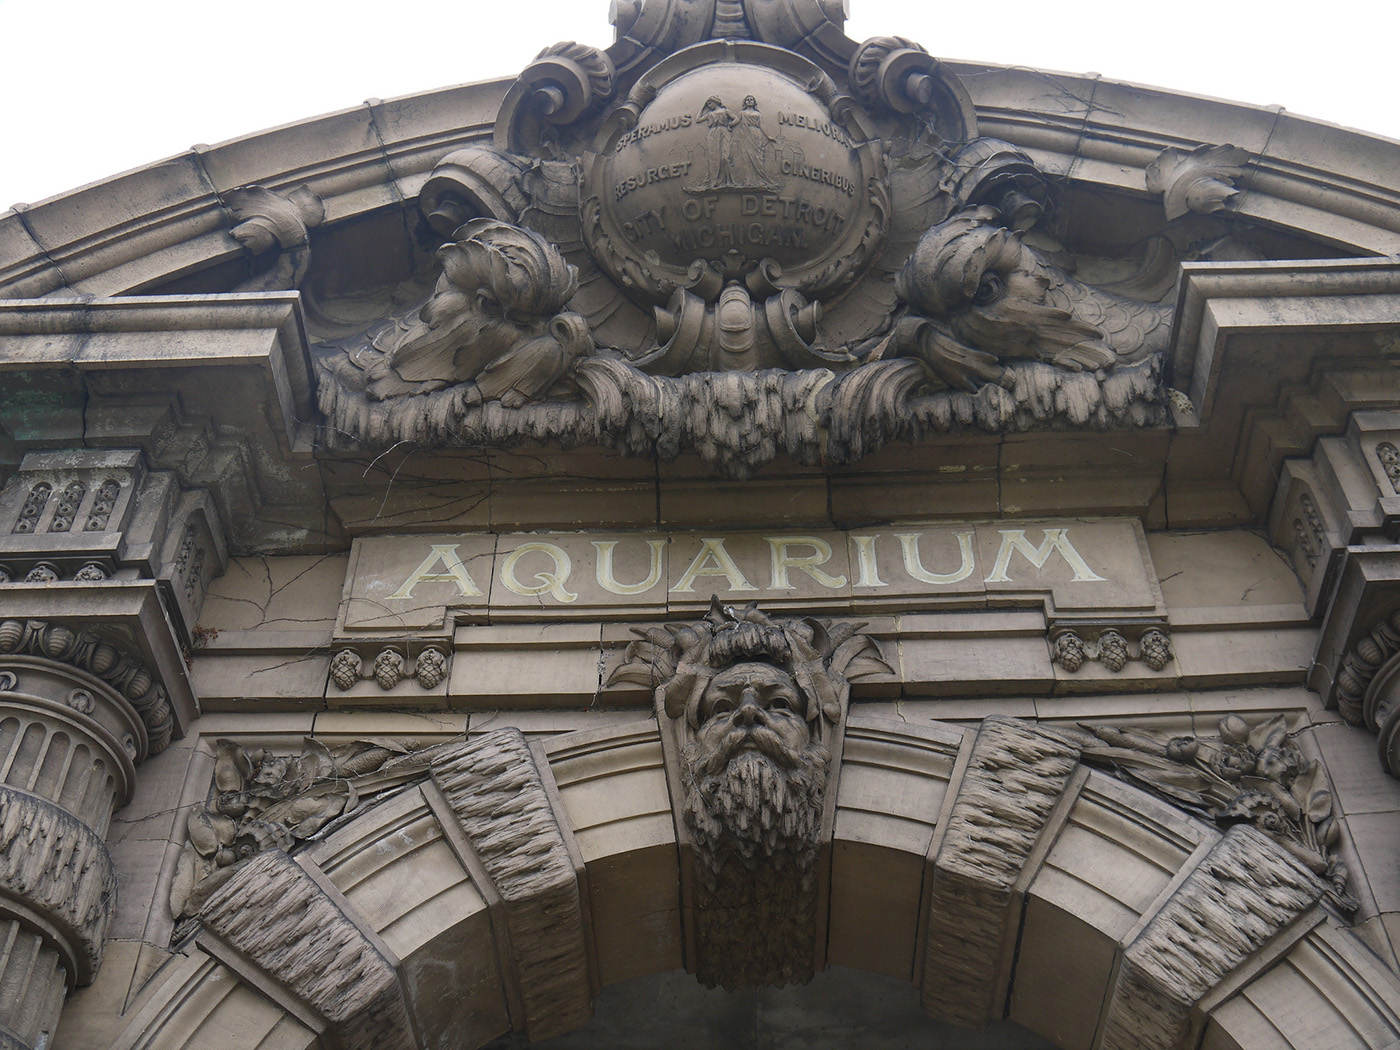 Belle Isle Aquarium, Detroit, MI